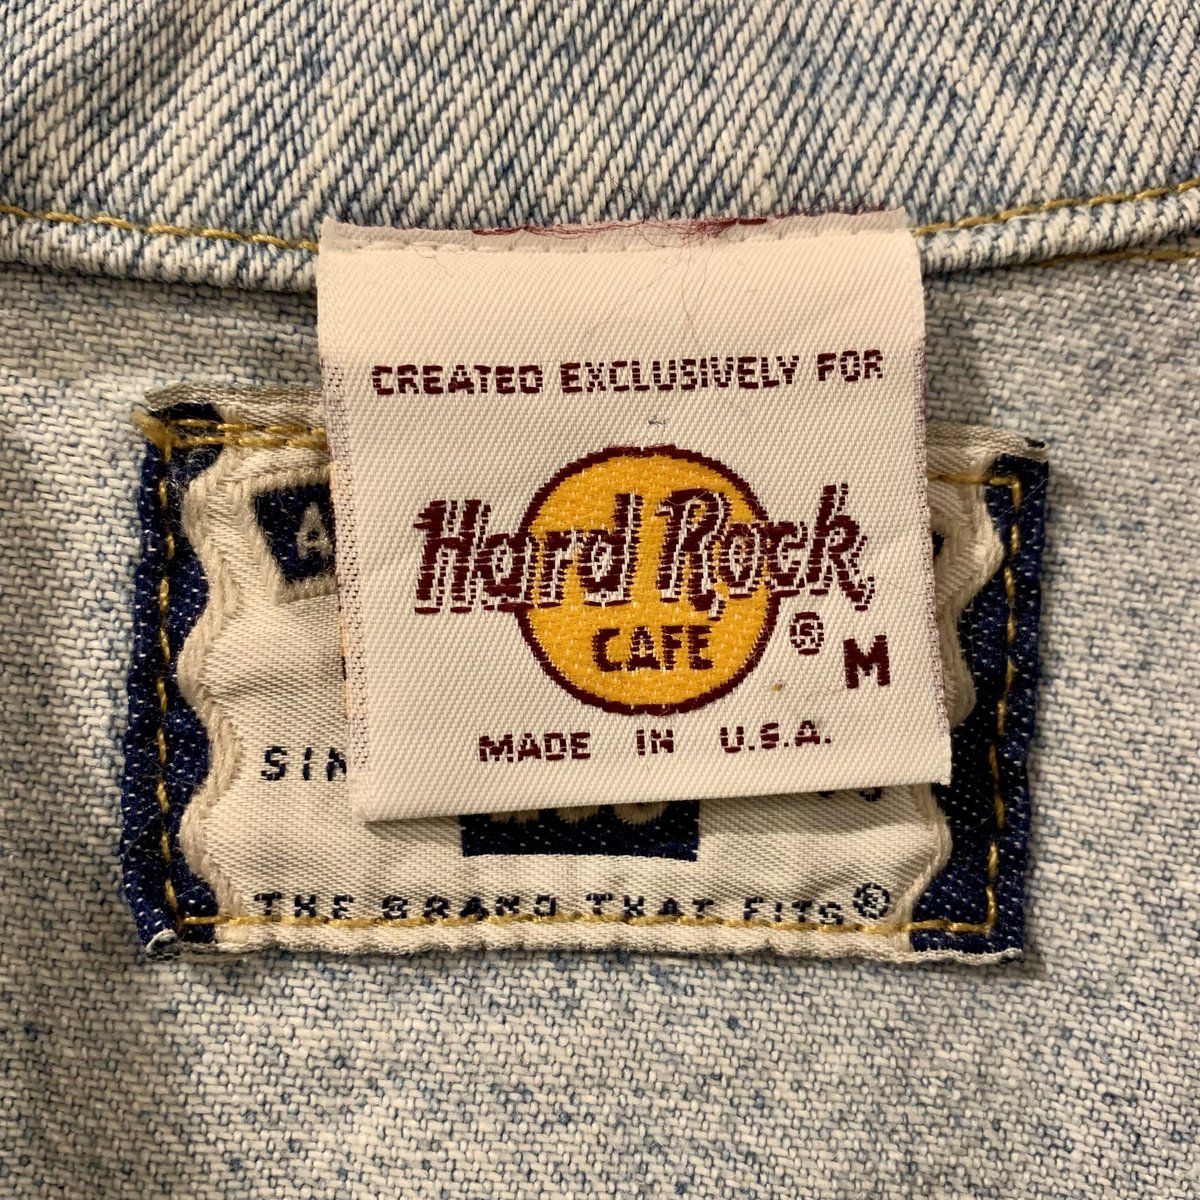 Lee Hard Rock CAFE デニムジャケット USA製 4つポケット (S2177)